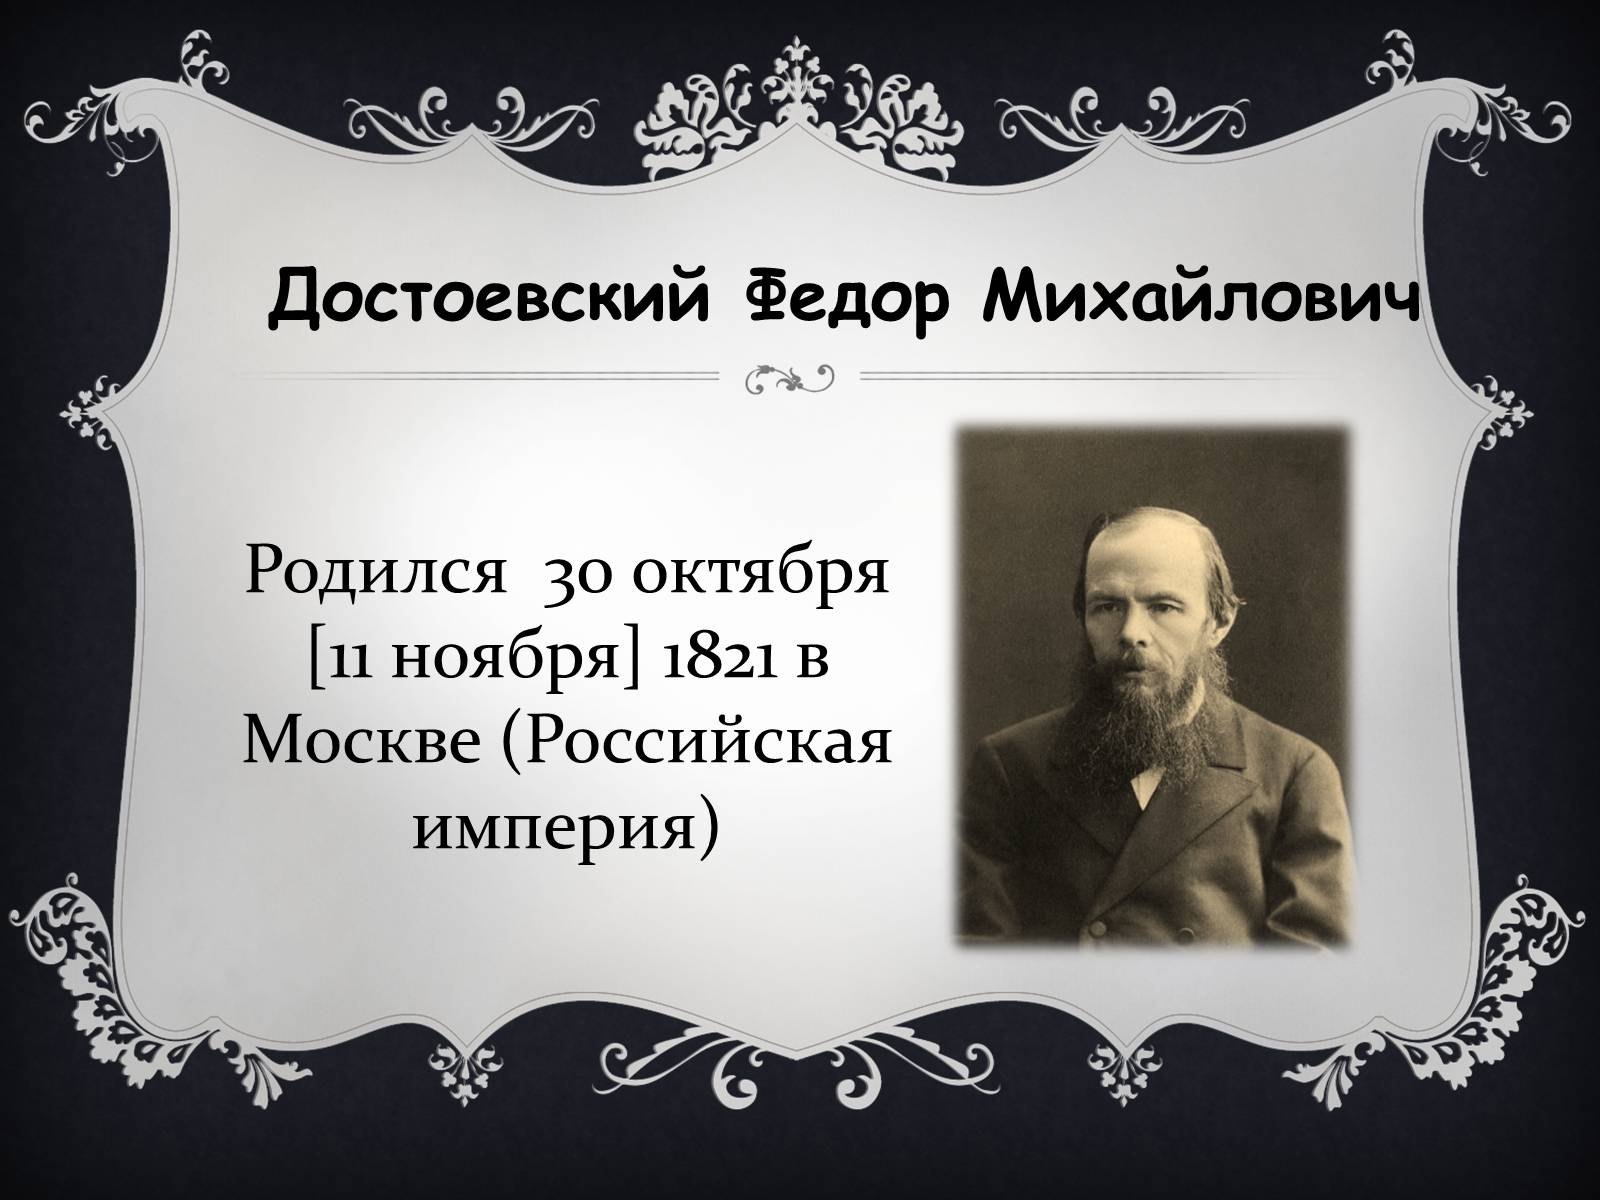 Достоевский презентация 9